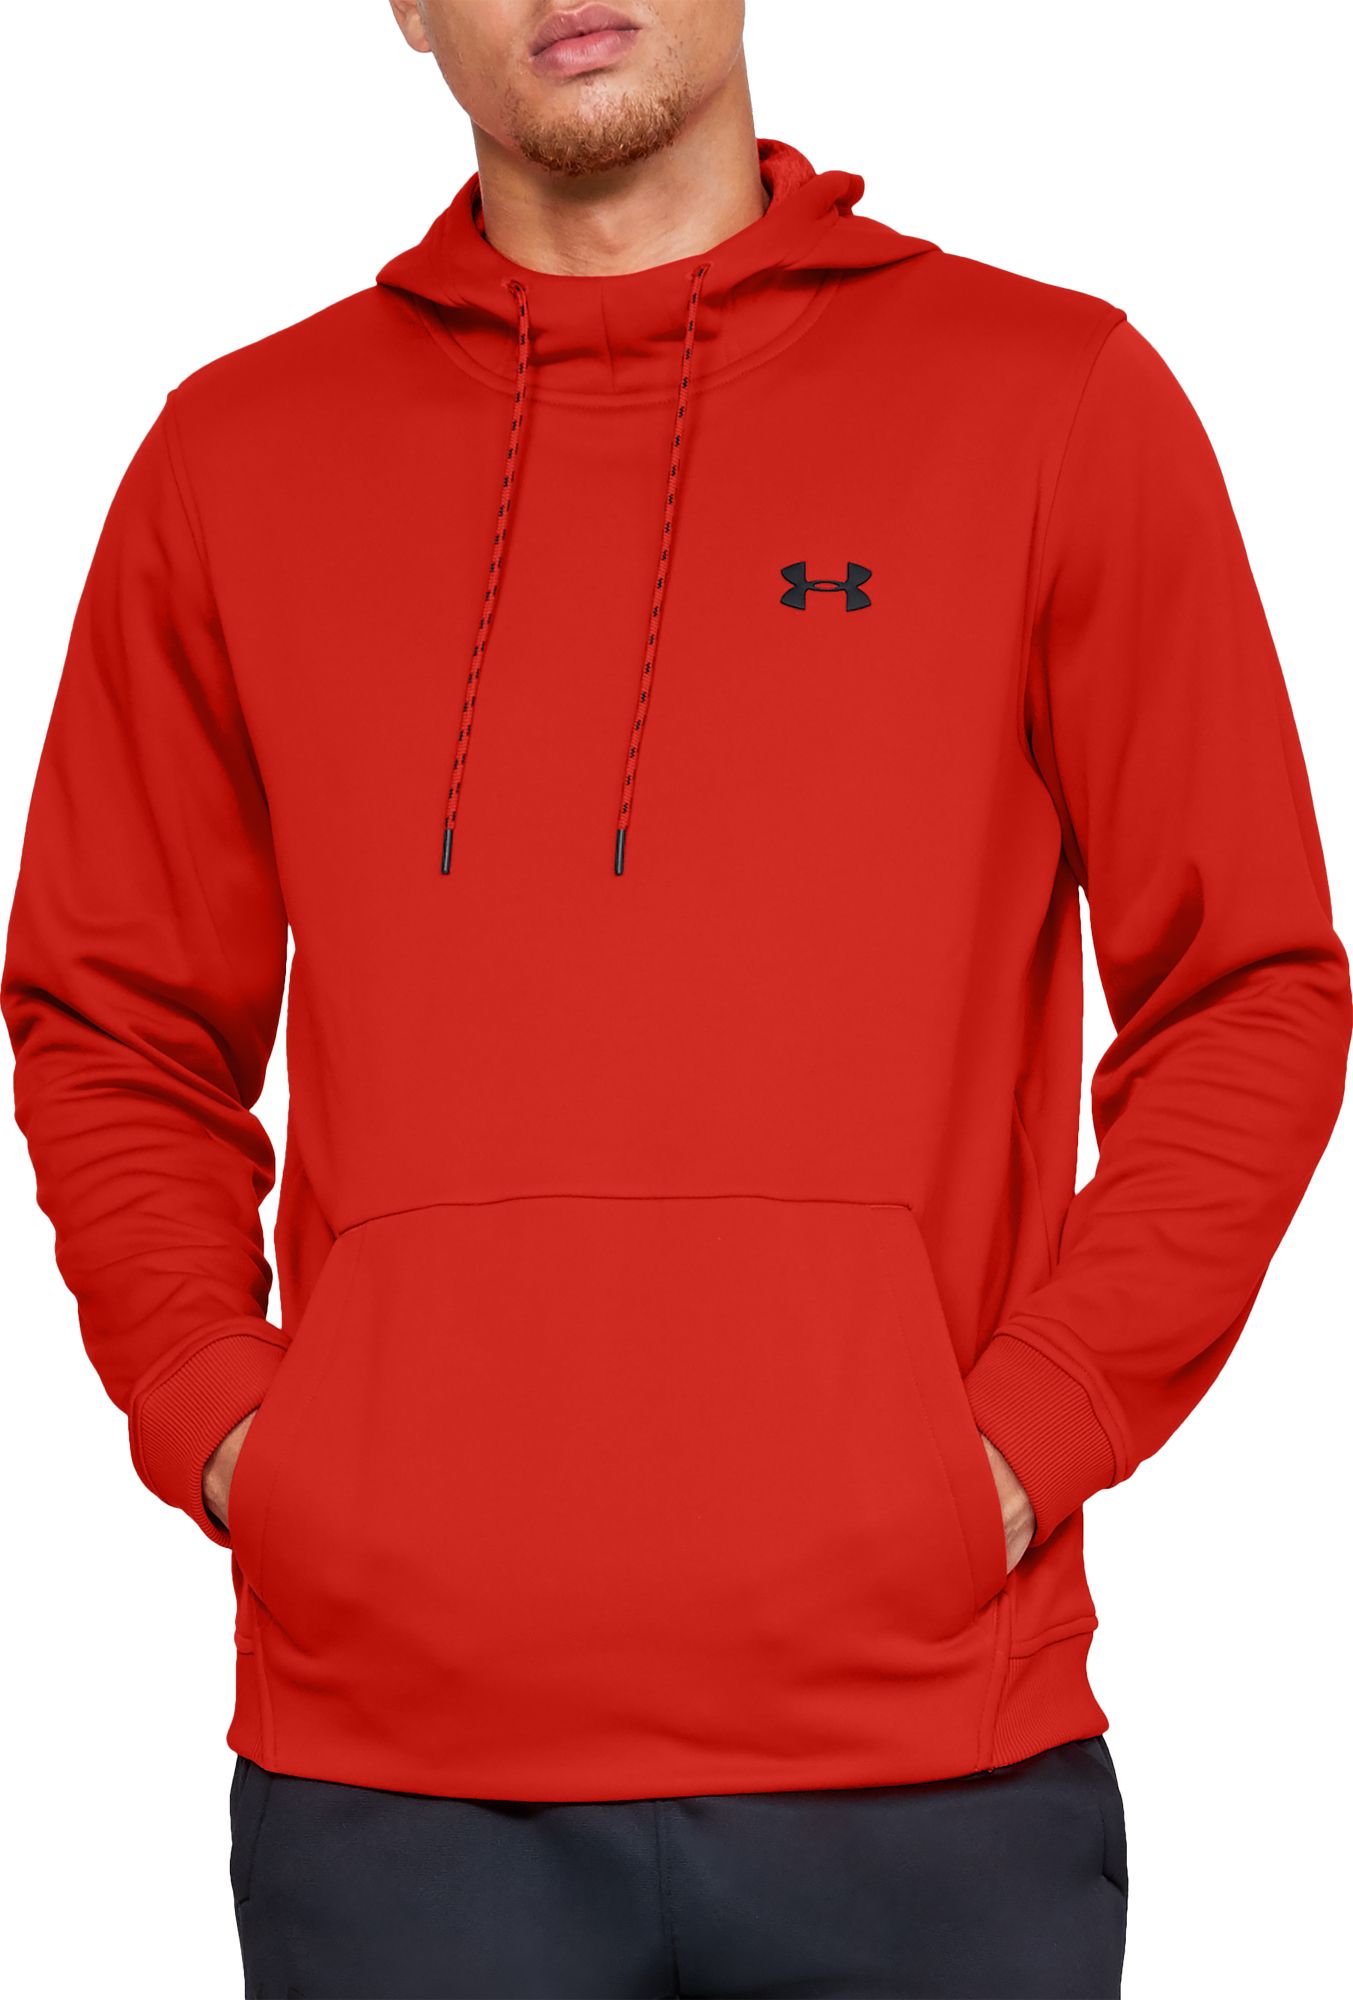 red under armor hoodie